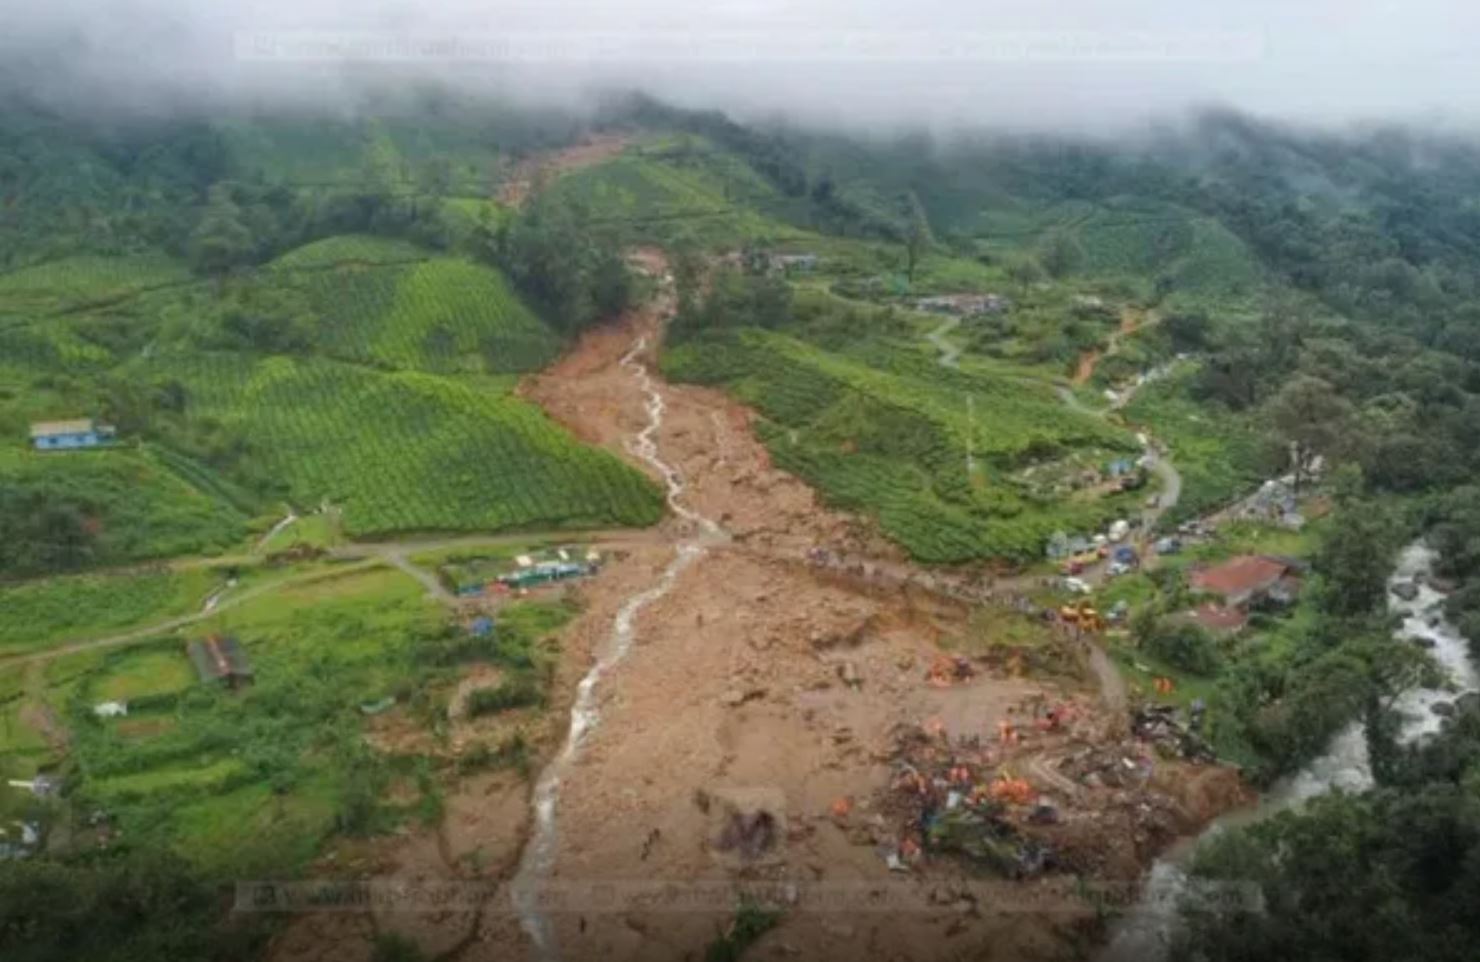 The Pettimudi landslide